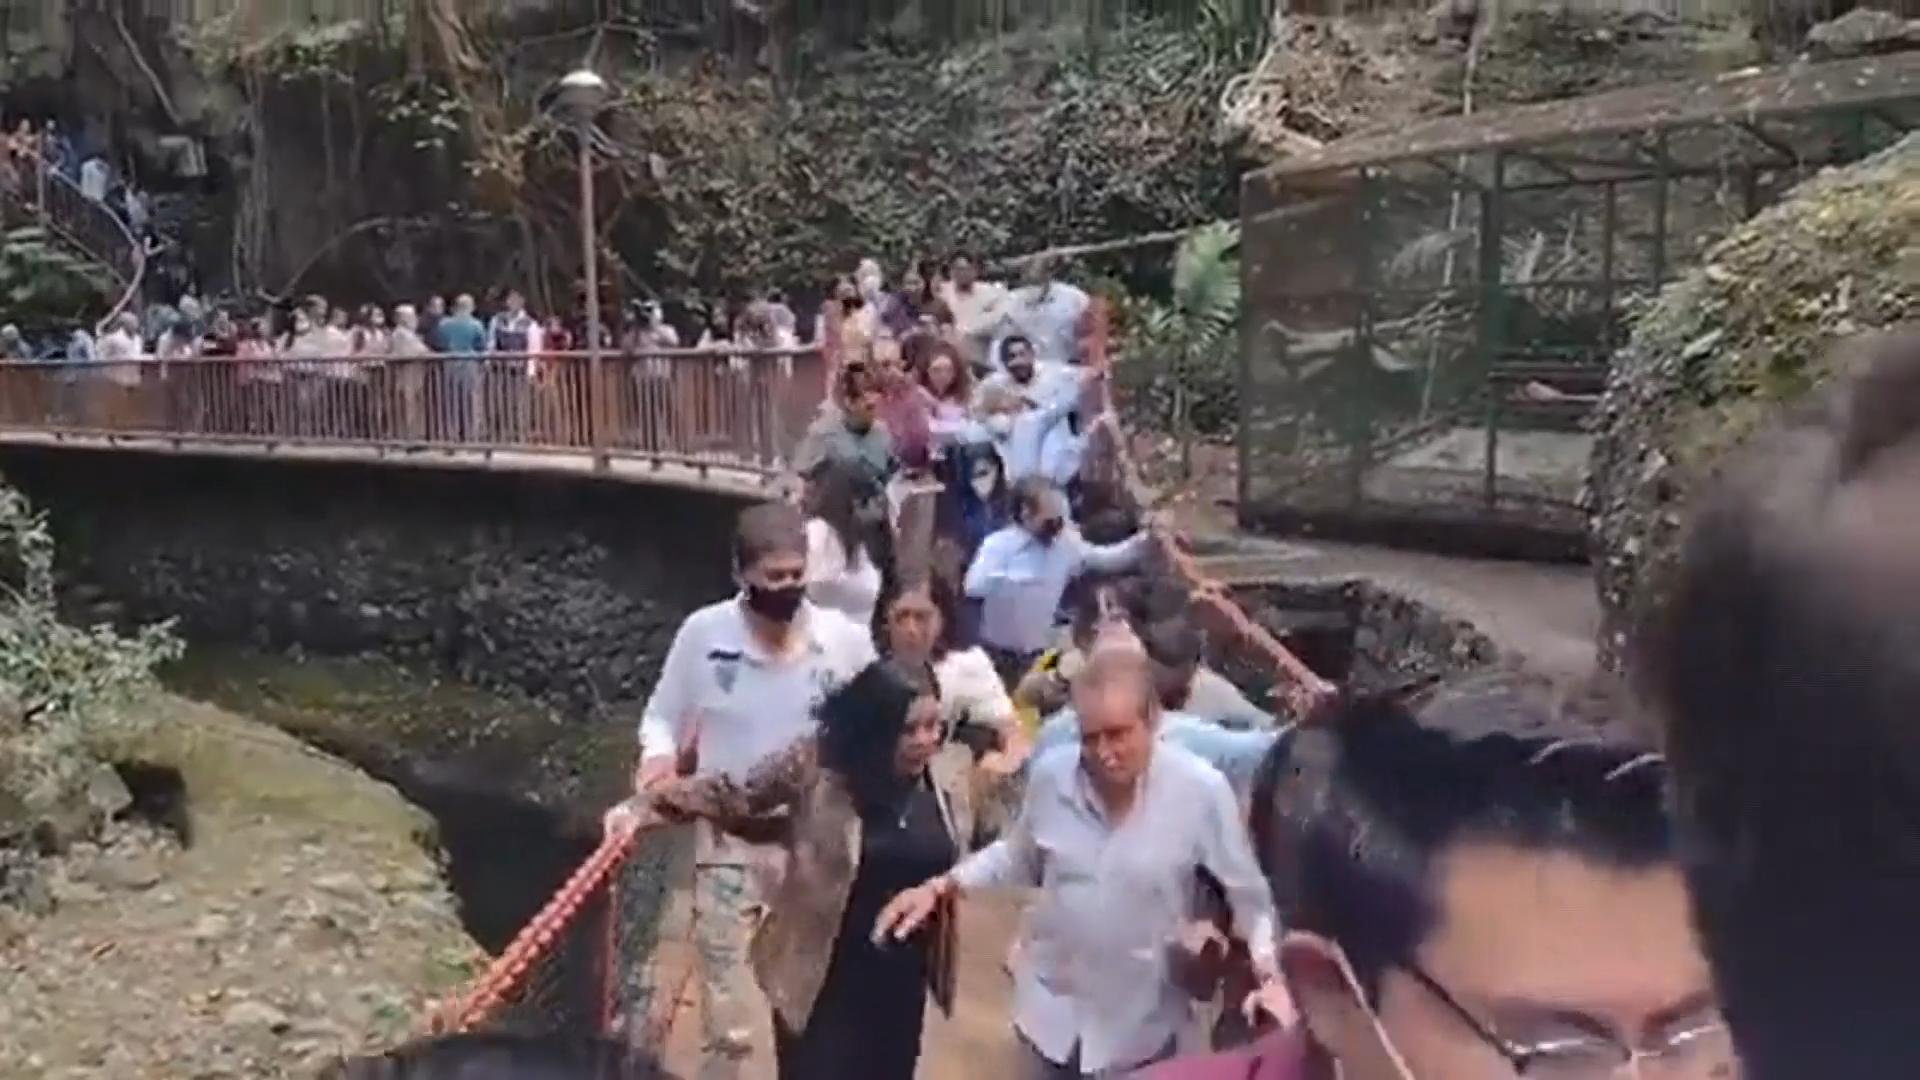 Hängebrücke stürzt bei Einweihung ein - 14 Verletzte Bürgermeister unter den Opfern